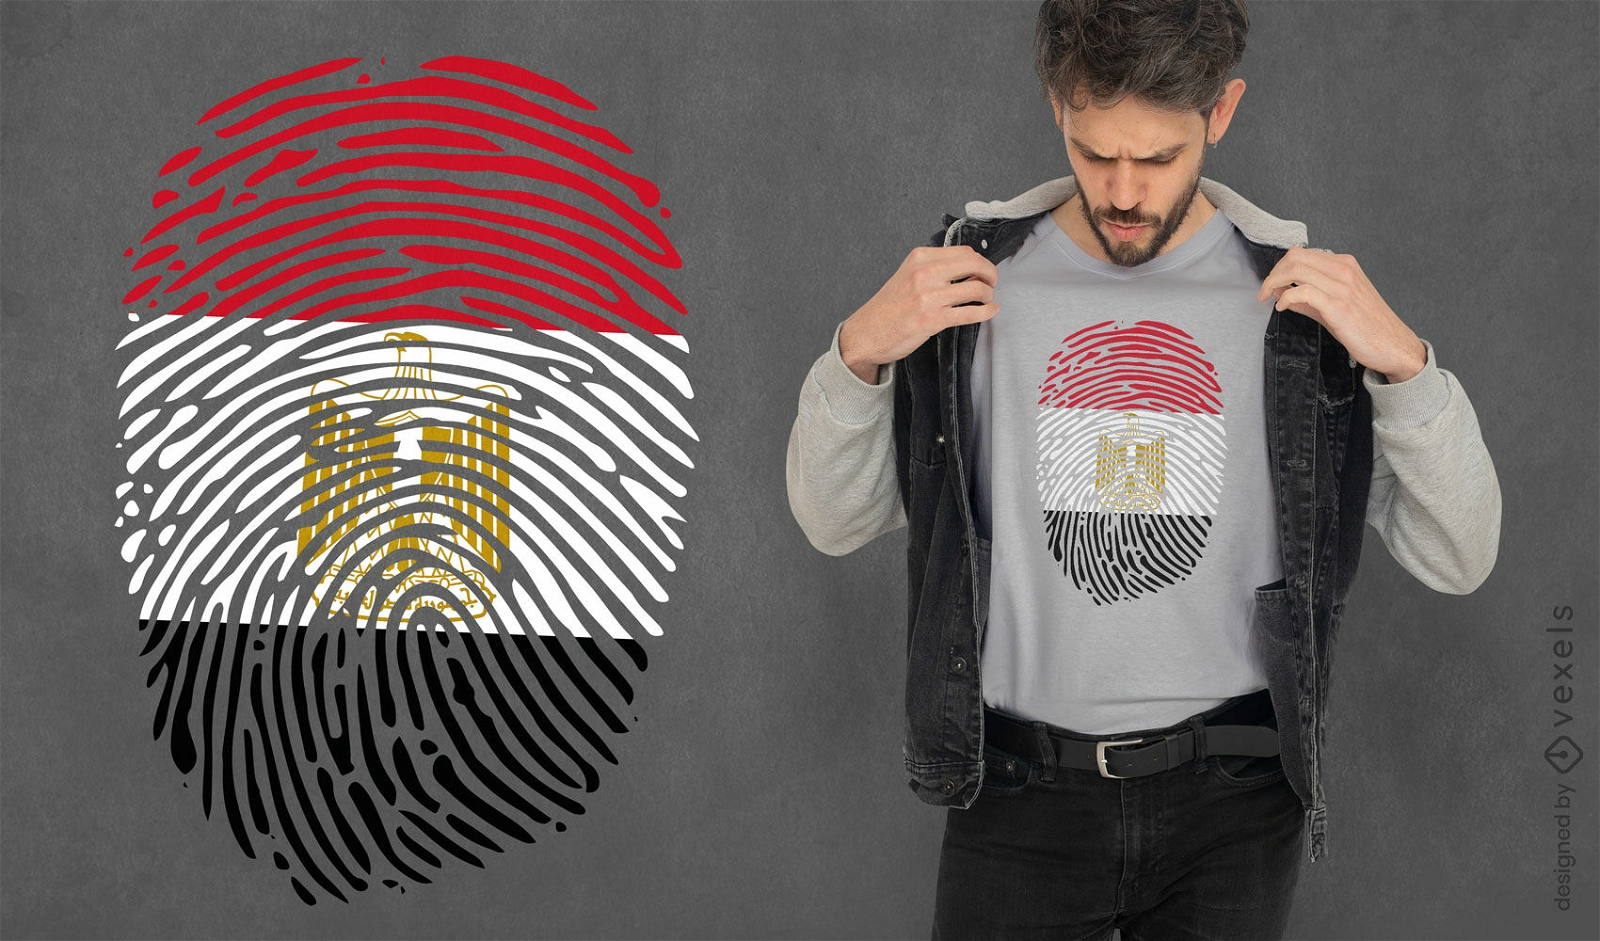 Dise?o de camiseta con bandera de huellas dactilares egipcias.